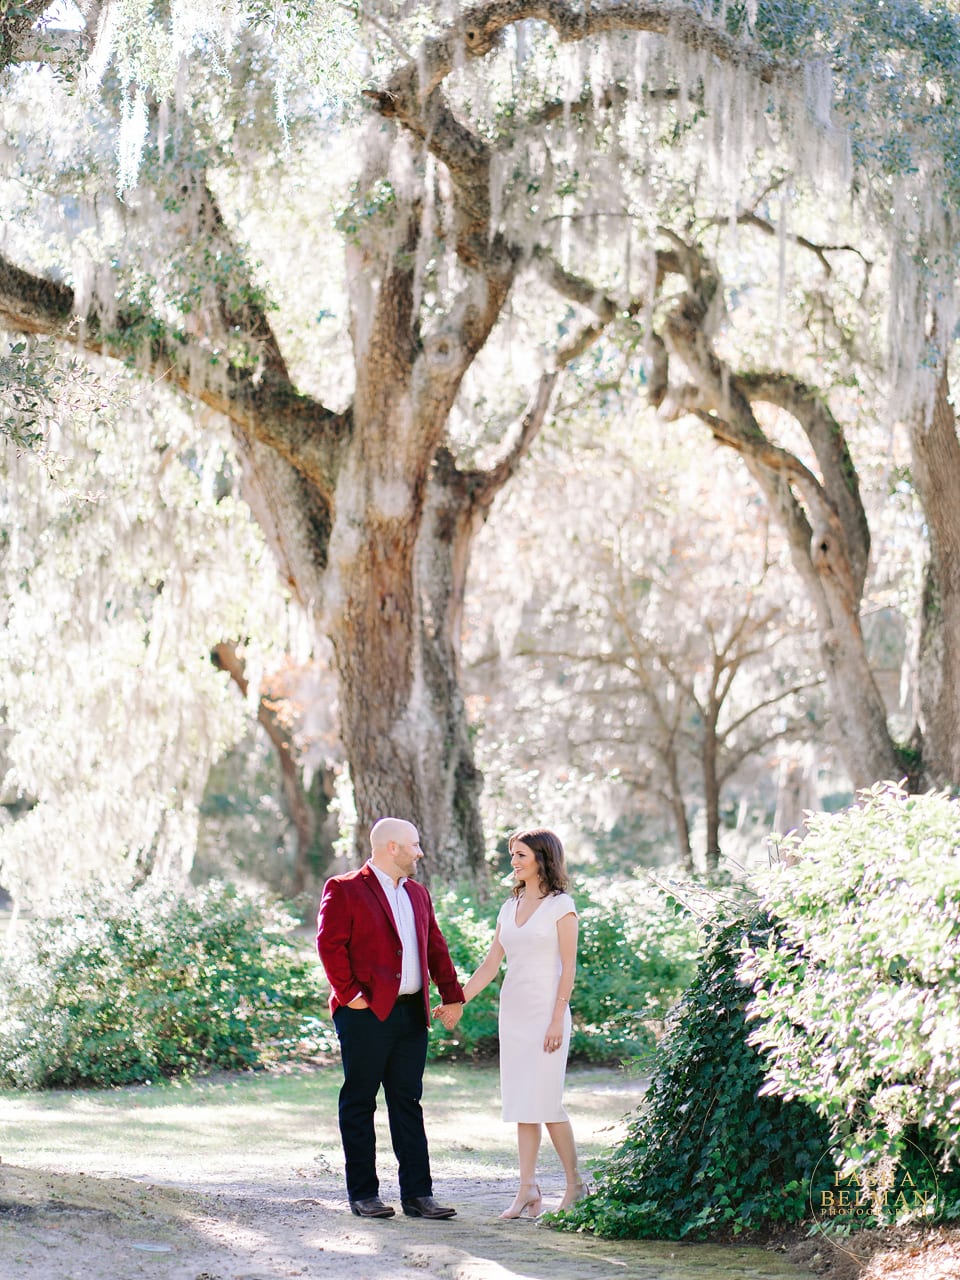 Charleston Engagement Pictures | Engagement photography session - Charleston Engagement Session | South Carolina Photographers